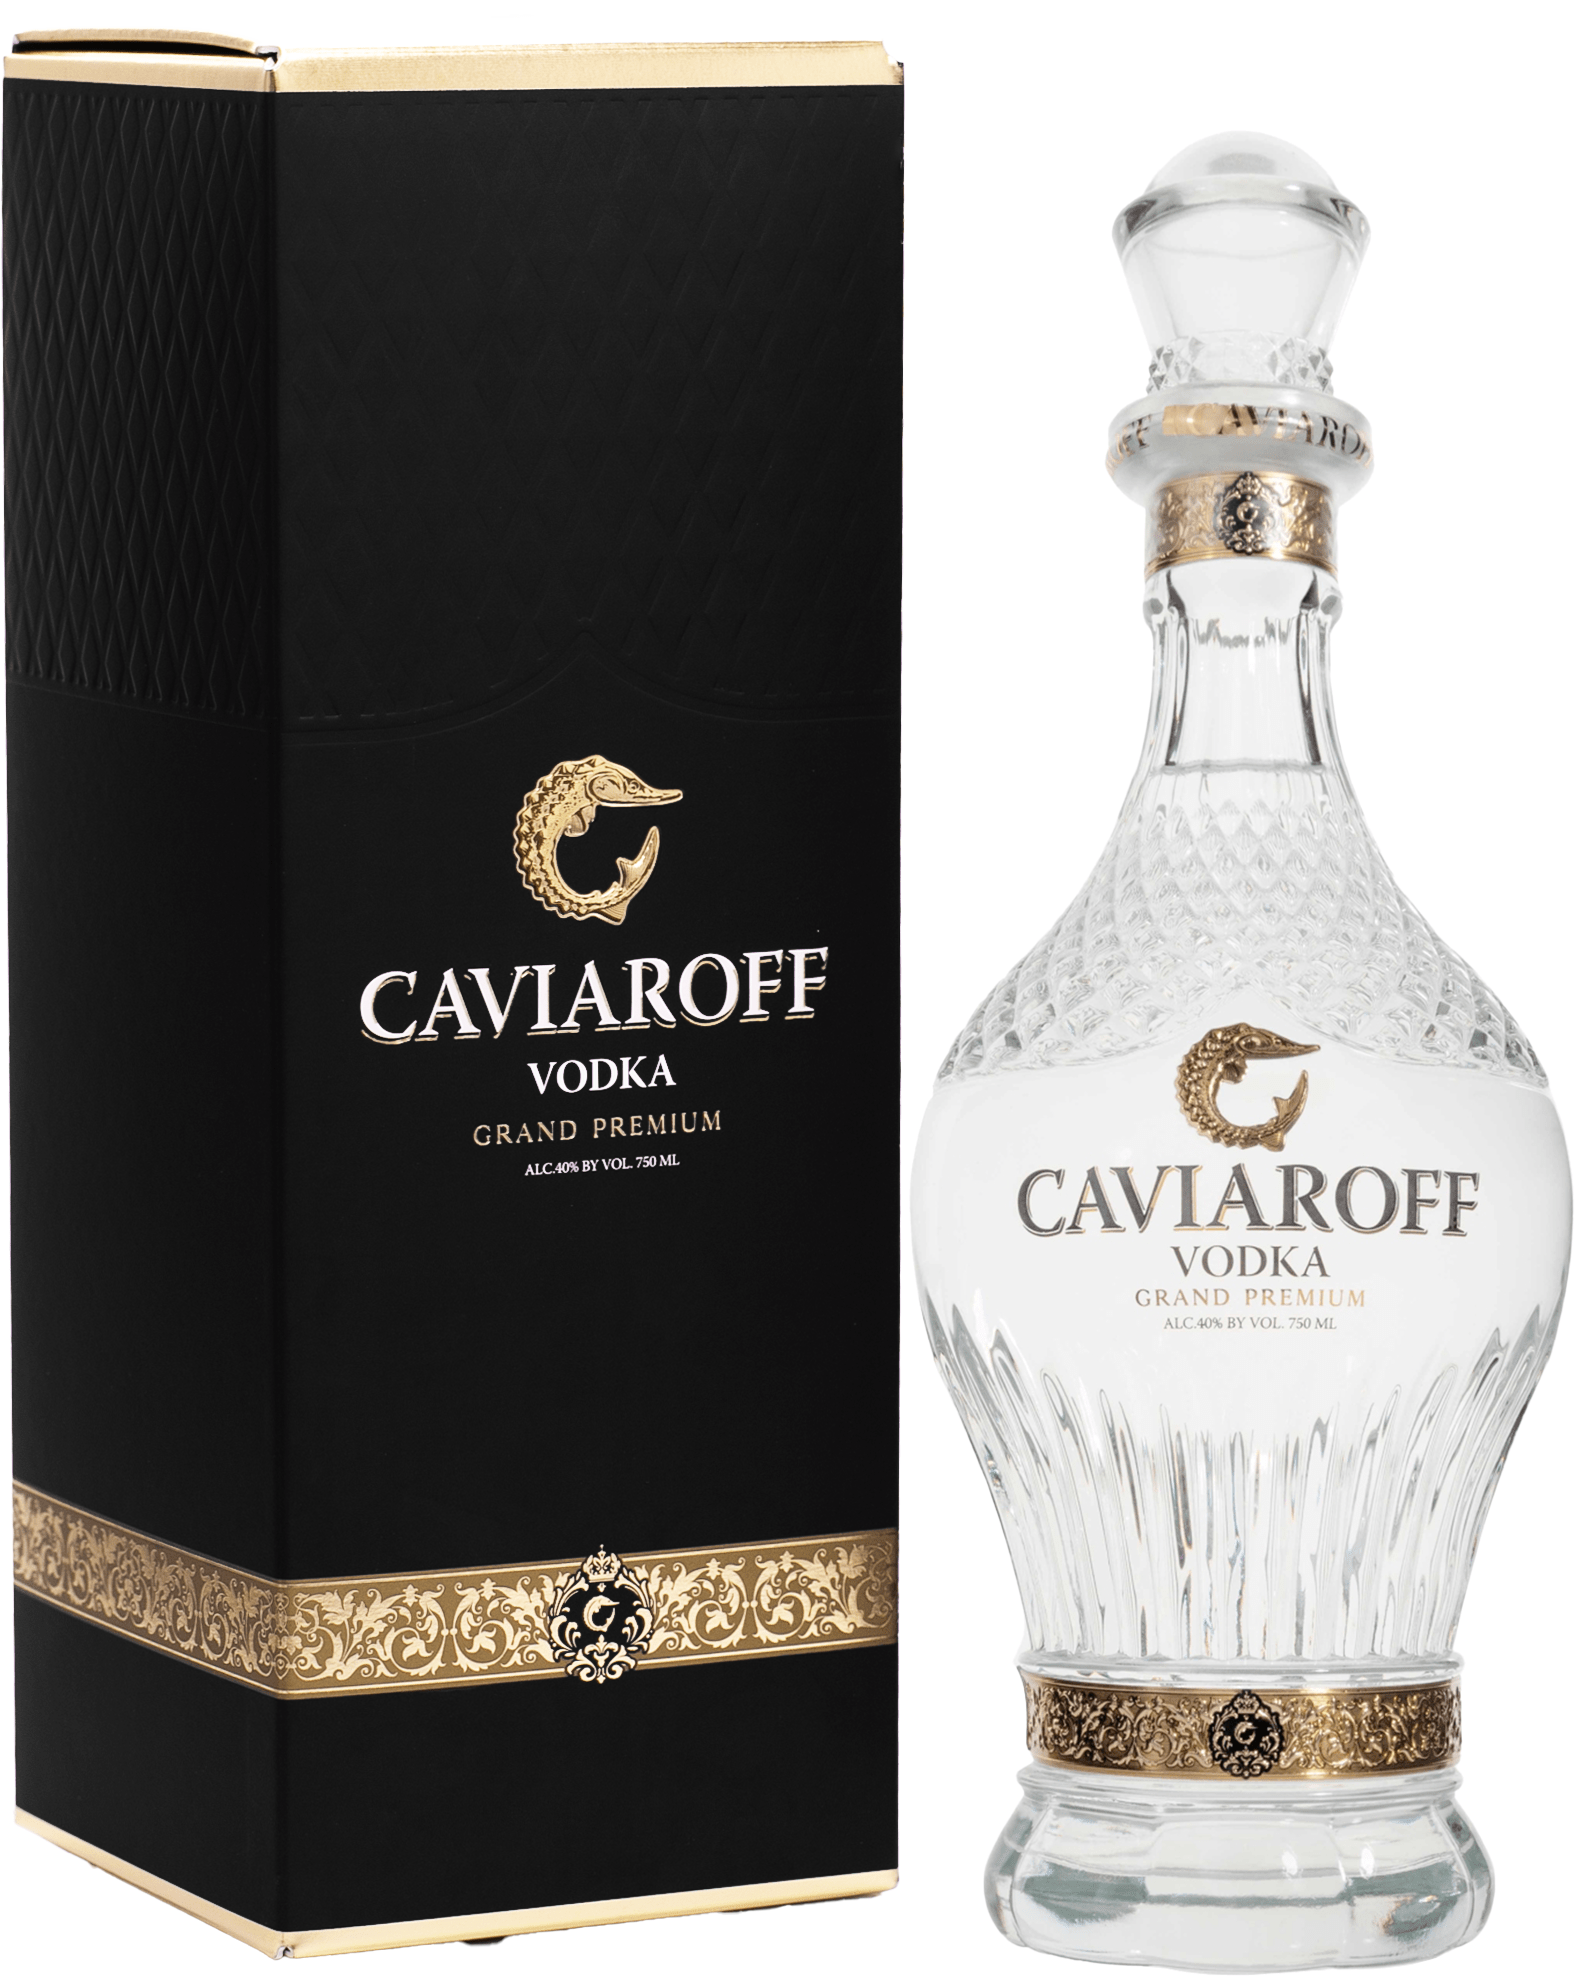 Caviaroff Vodka Grand Premium 40% 0,7l (darčekové balenie kazeta)